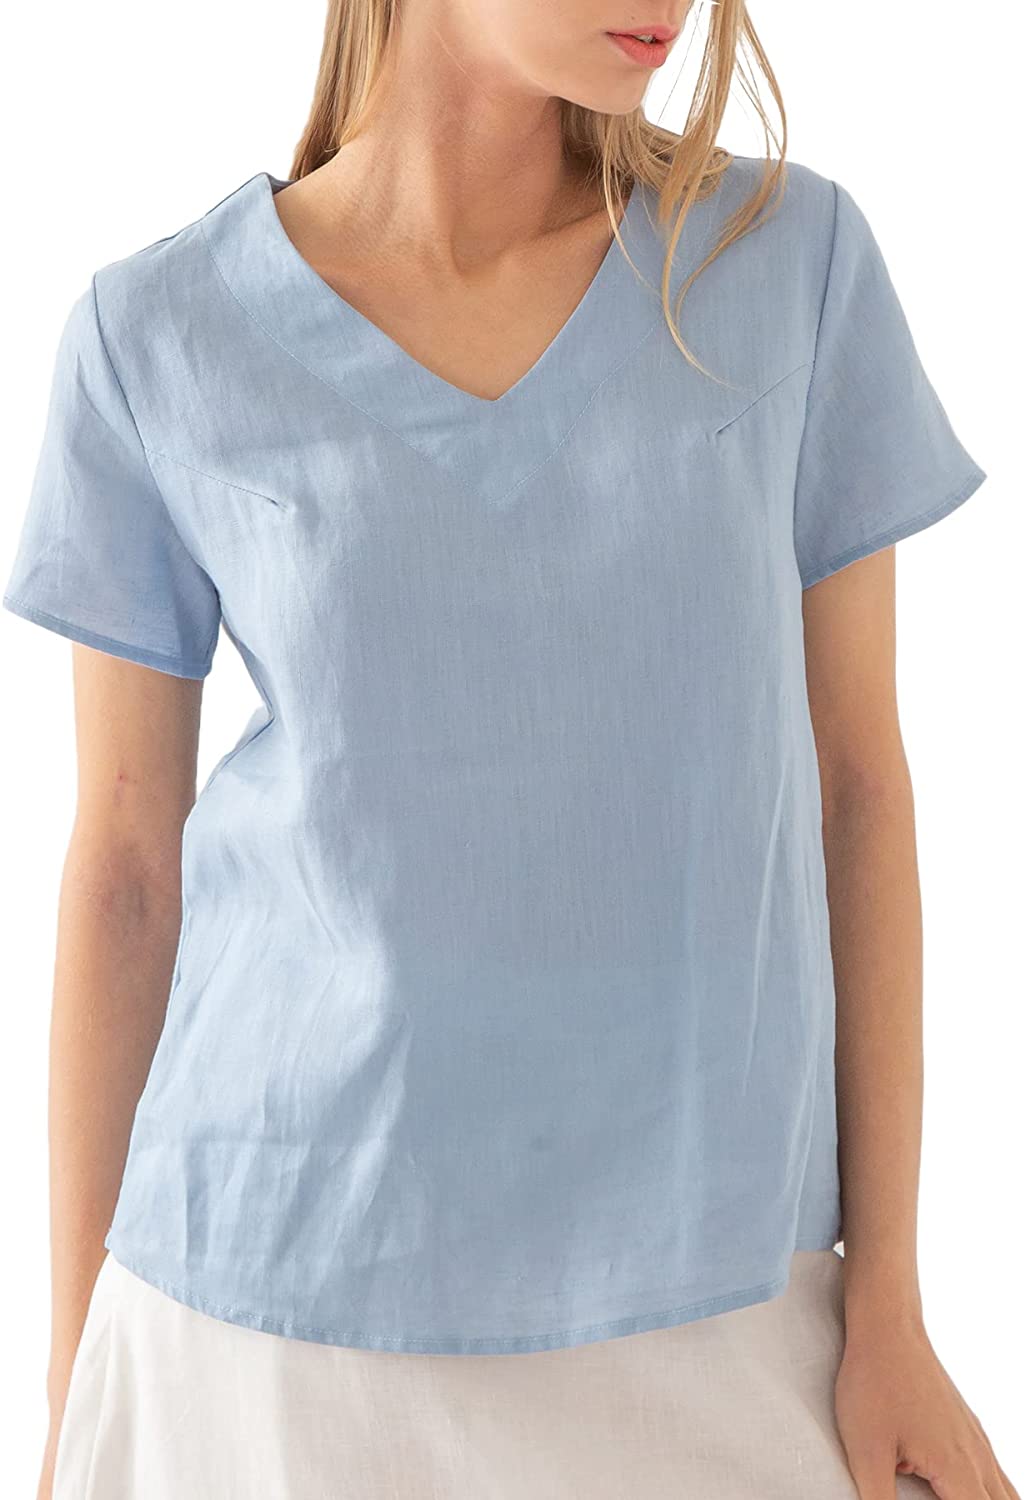 NTG Fad M / Blue 100% Linen Blouse Short Sleeve Shirt